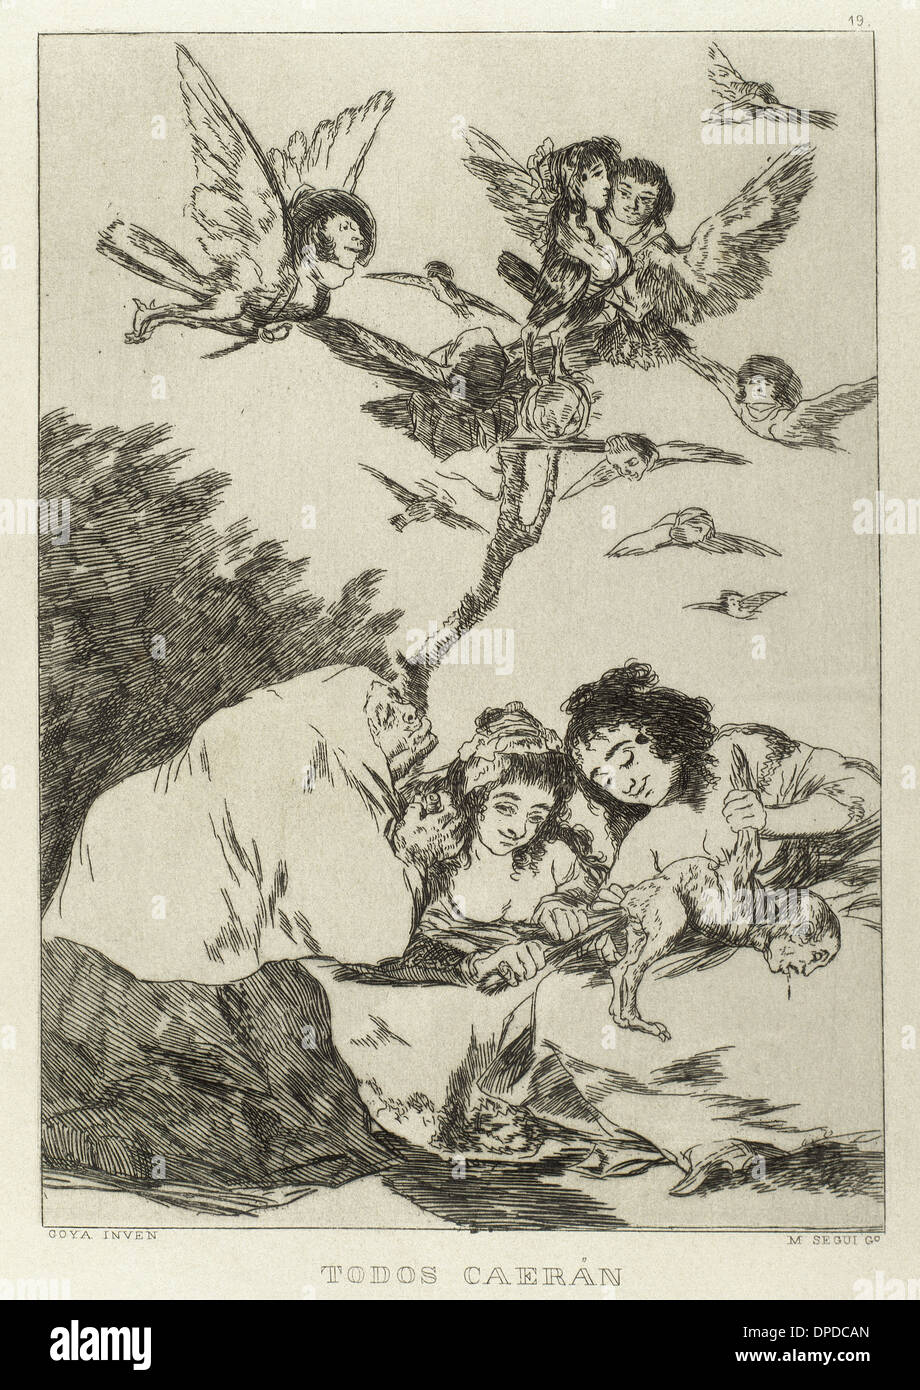 Goya (1746-1828). Peintre et graveur espagnol. Los Caprichos. Todos caeran (toute l'automne). Numéro 19. L'aquatinte. Banque D'Images